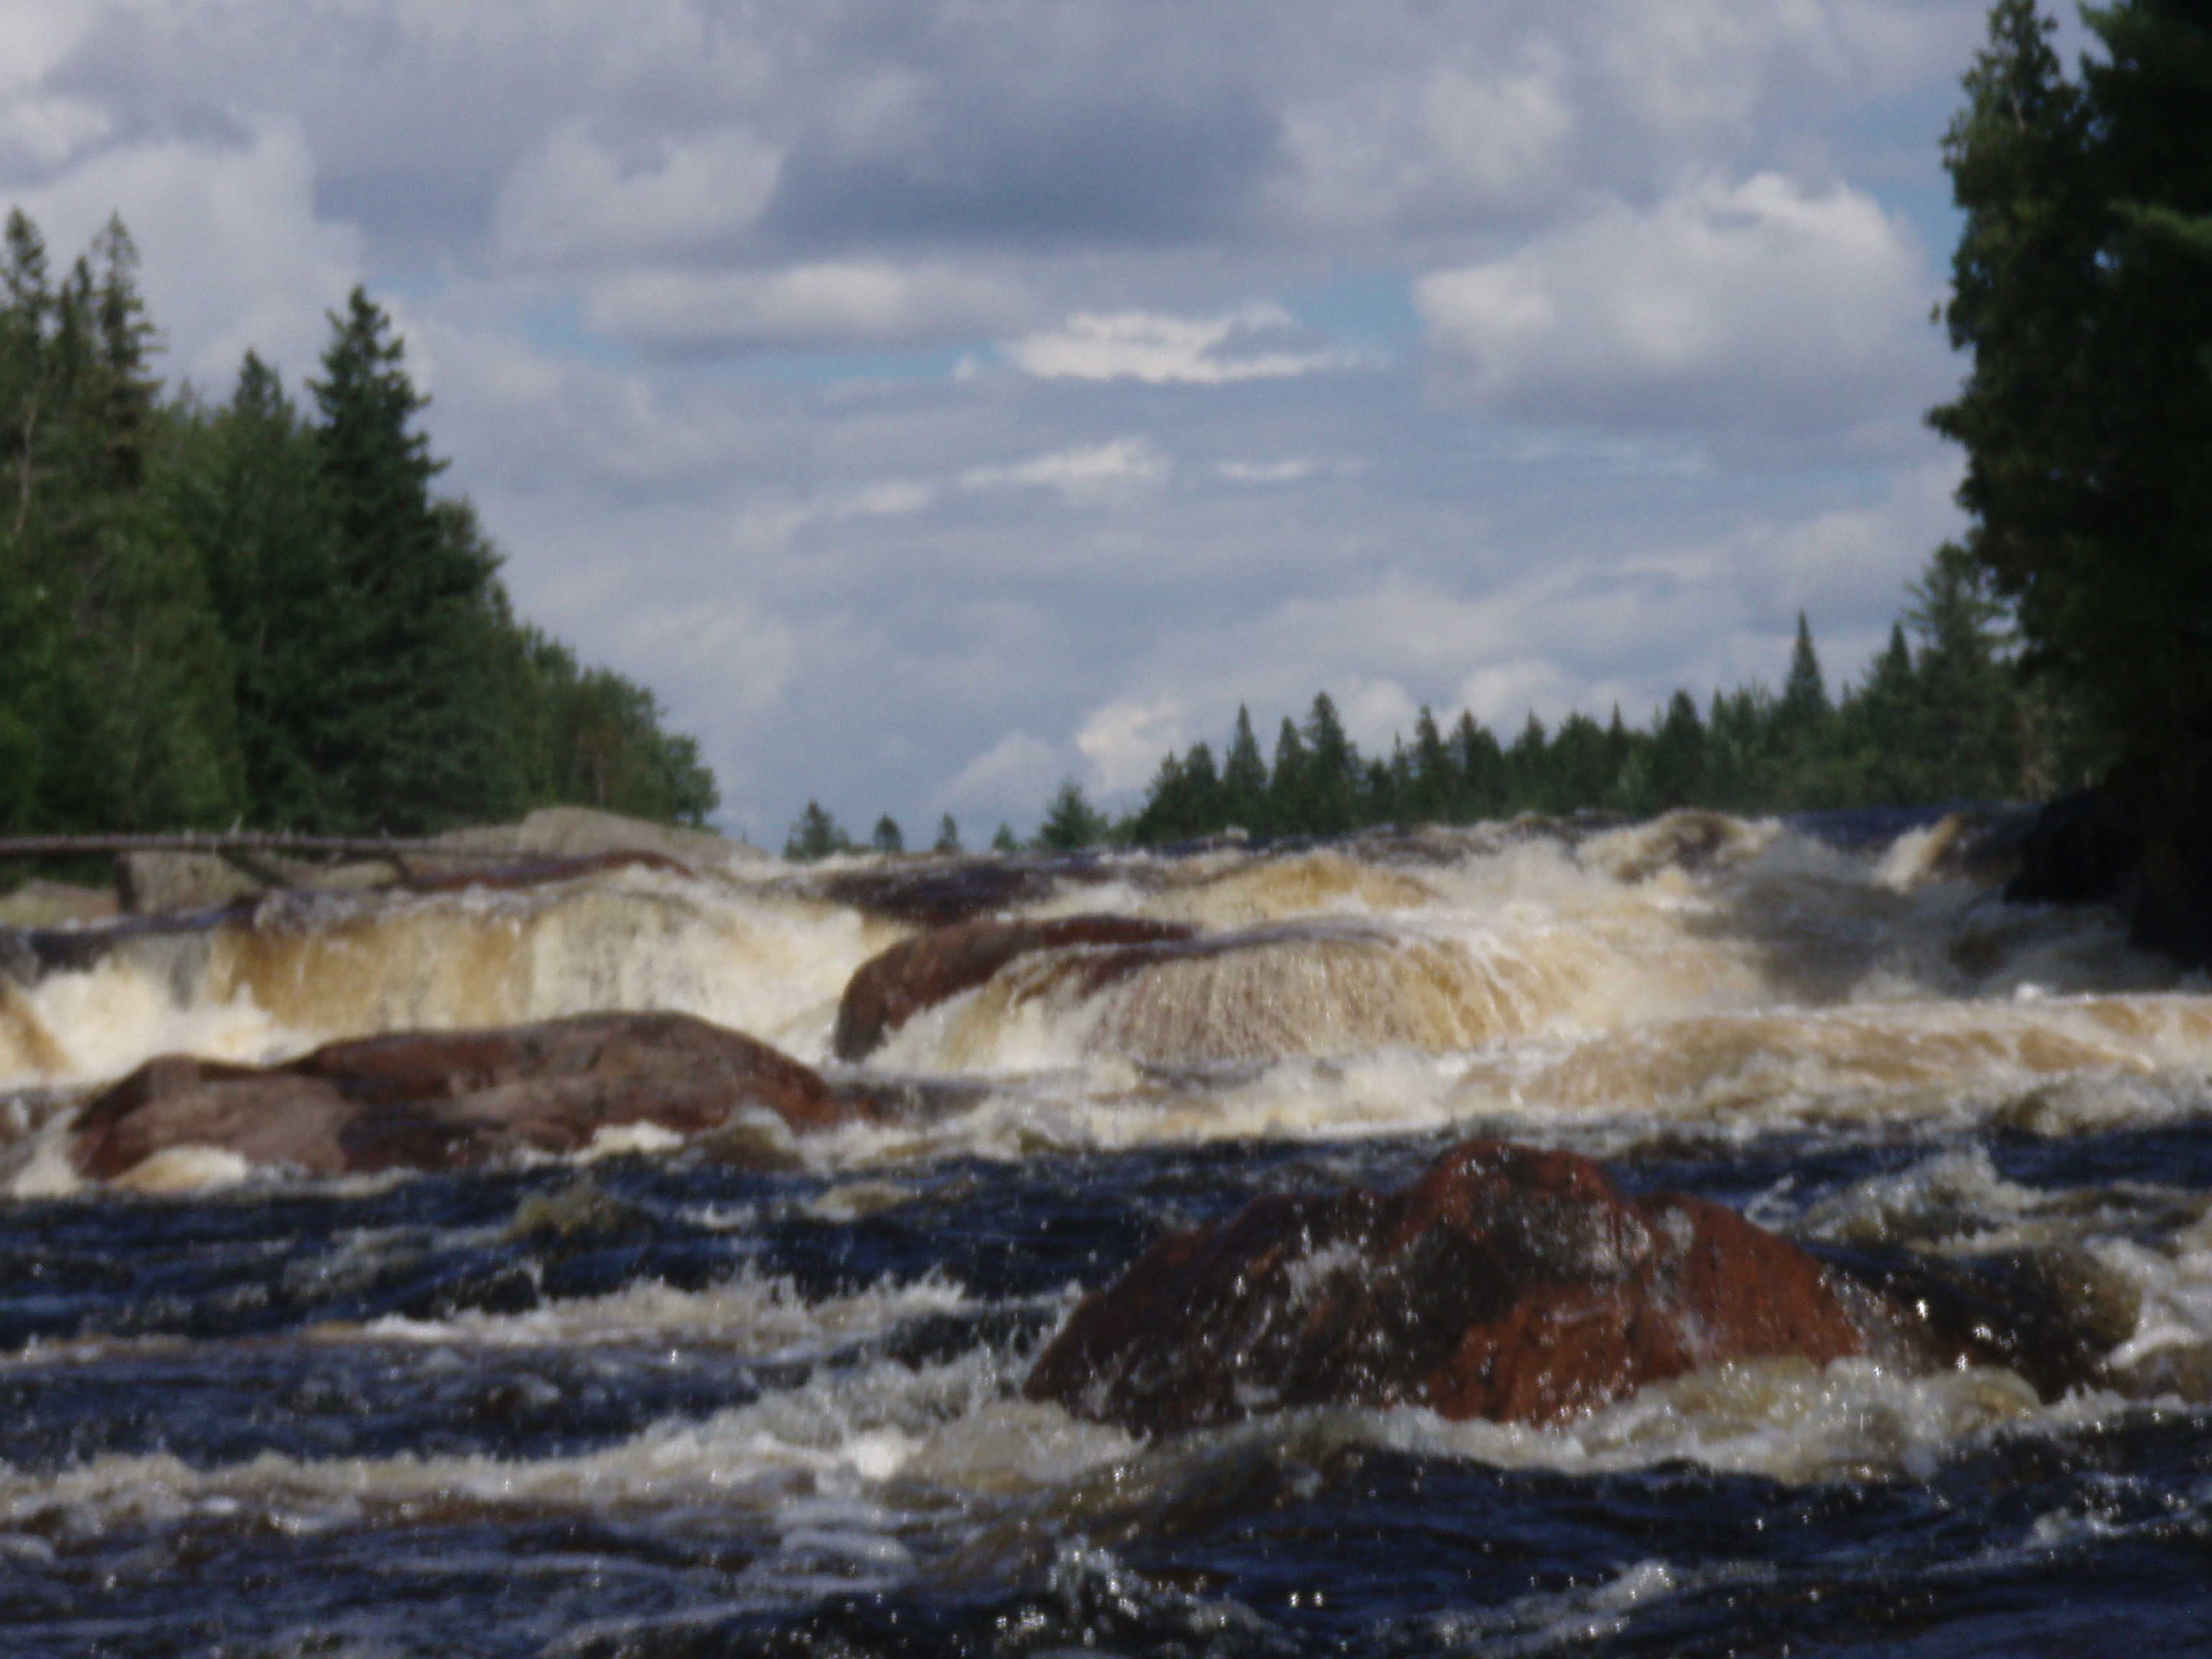 Looking back upstream at 12 foot falls(Photo by Keith Merkel - 8/15/08)